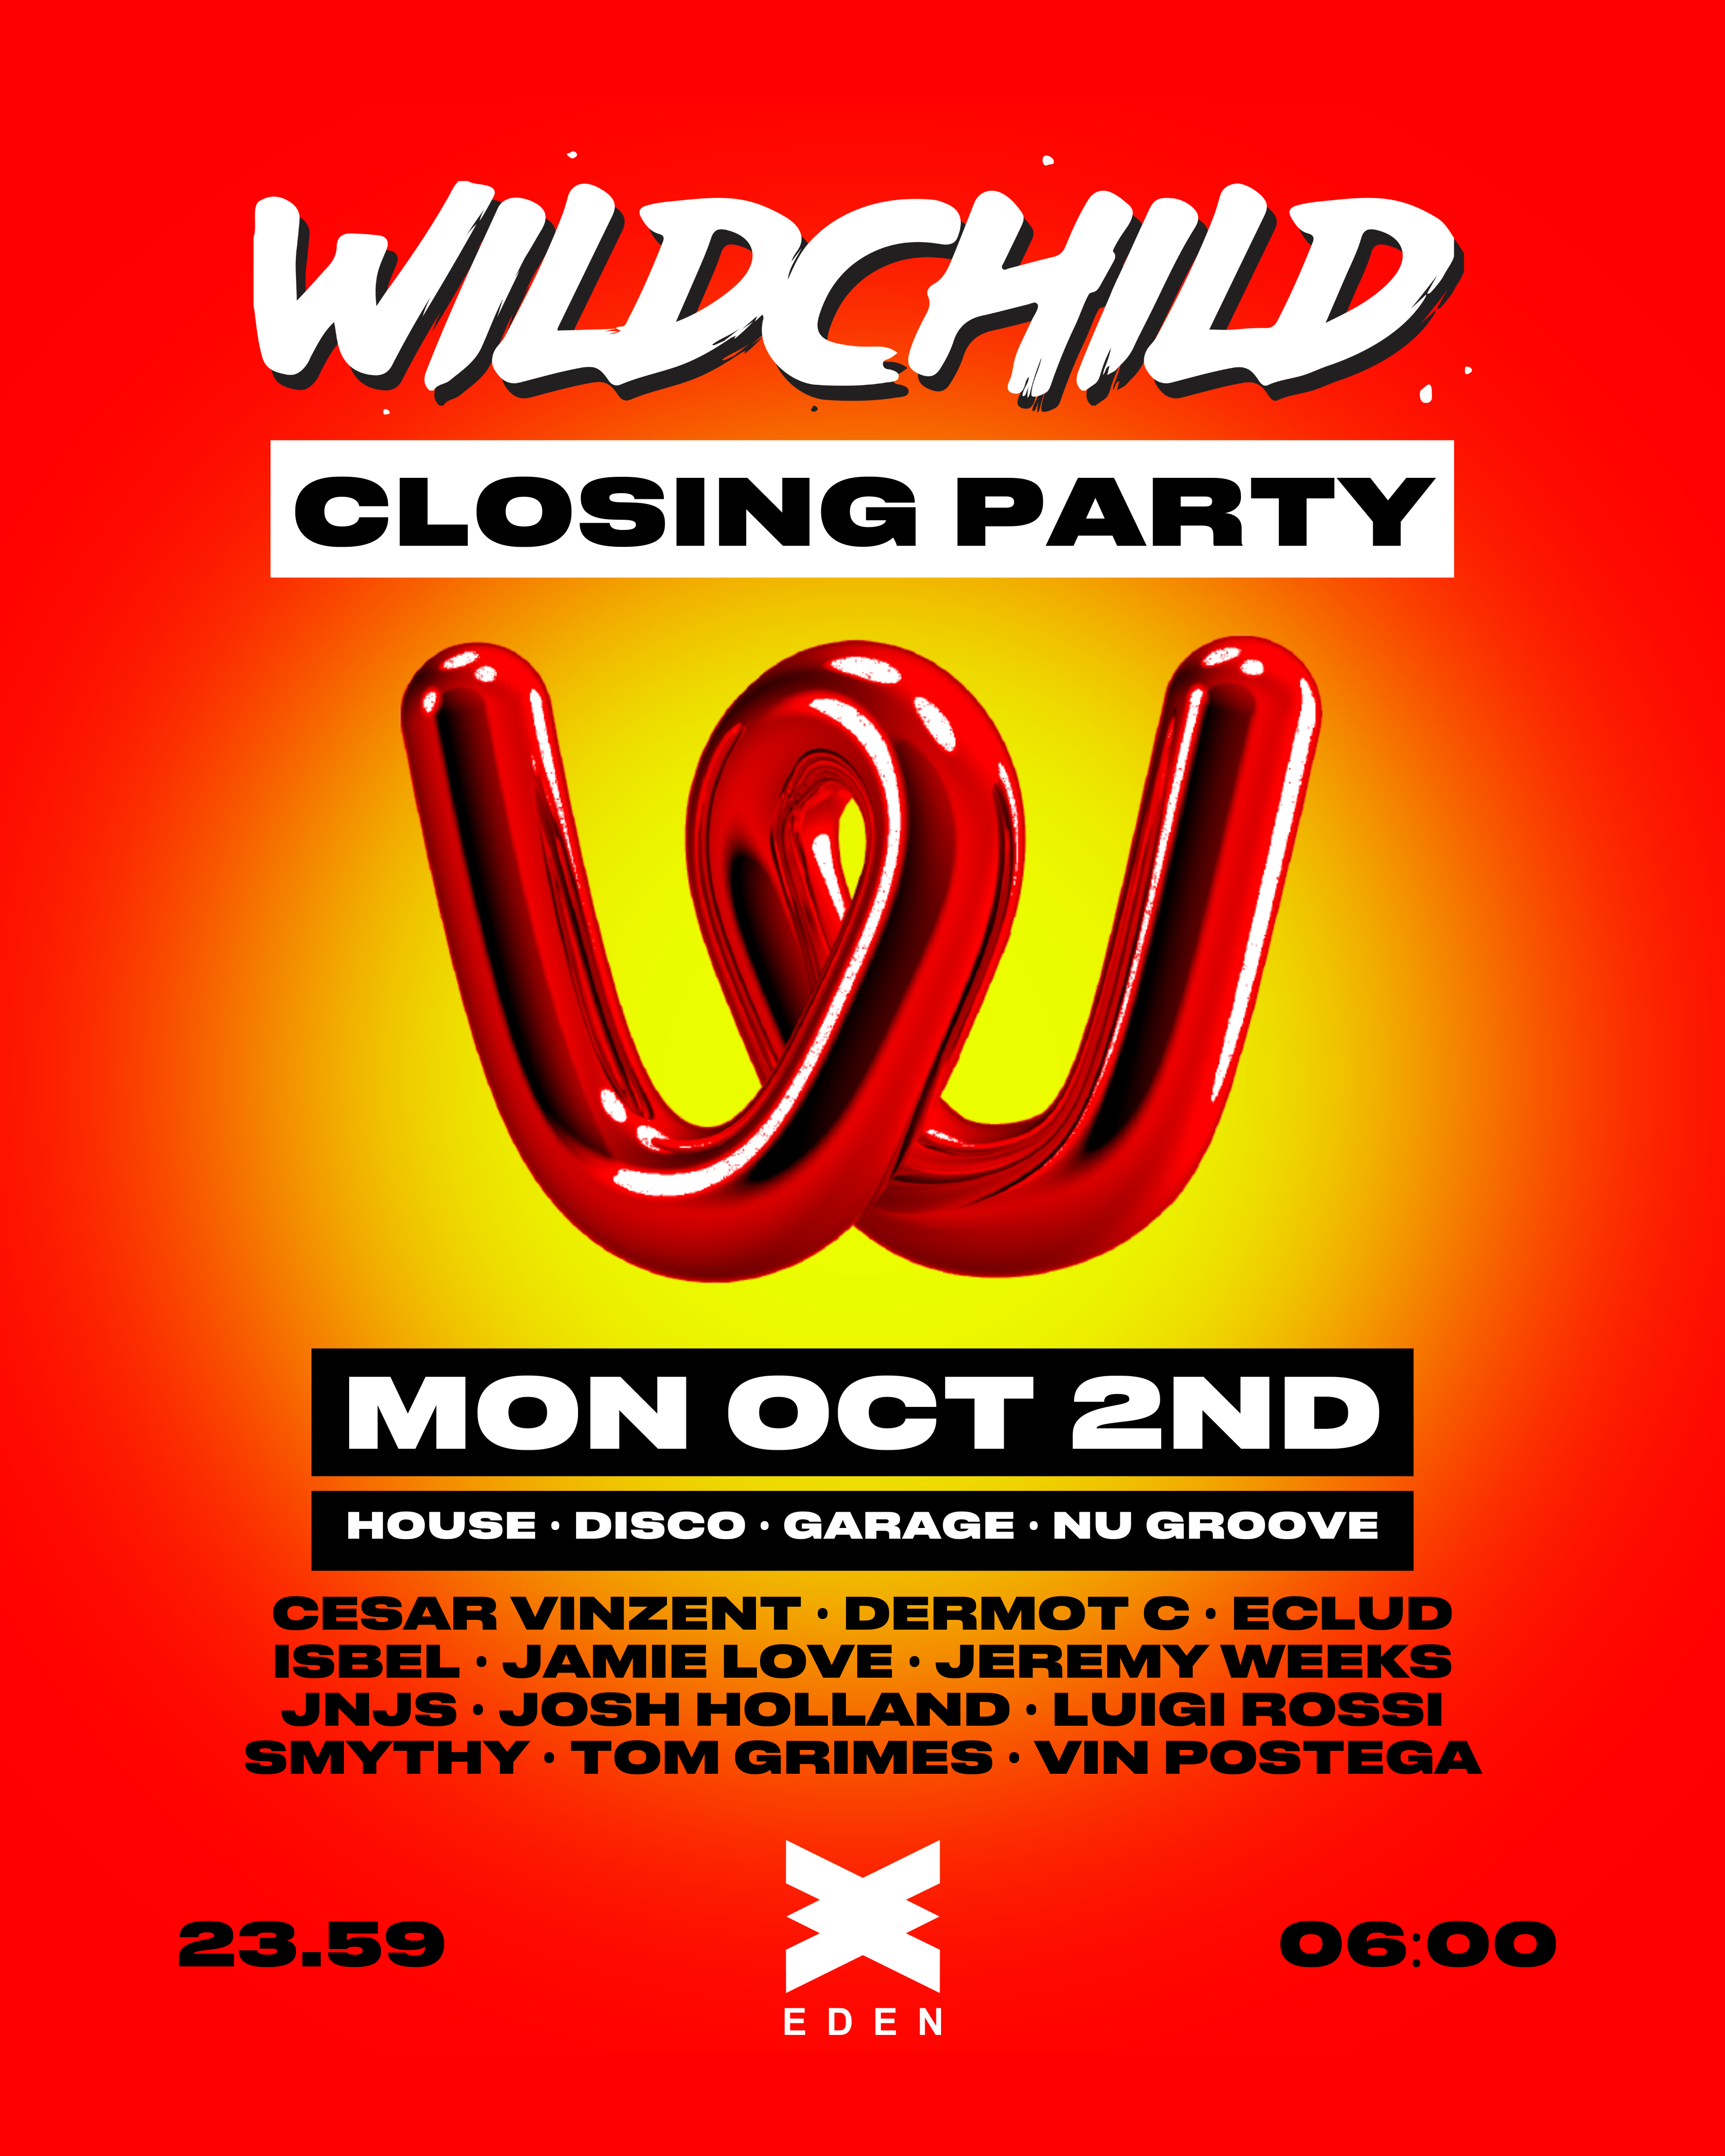 Wildchild Closing Party - フライヤー裏